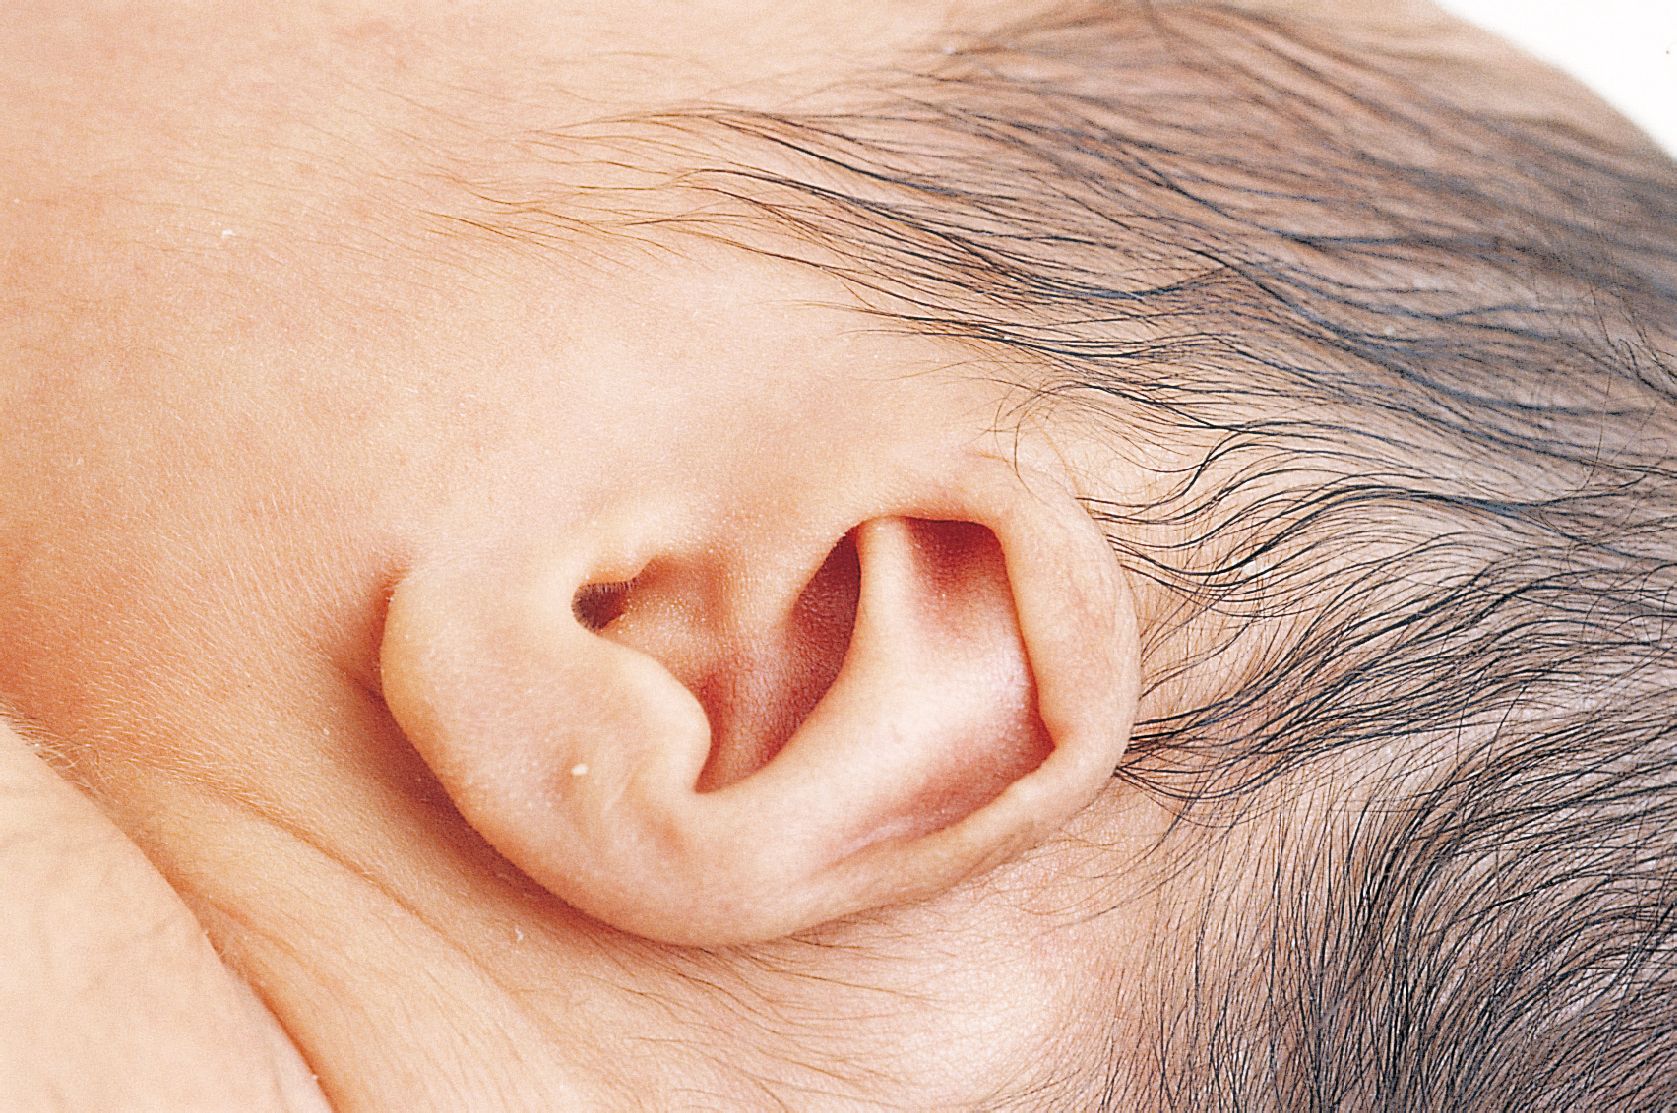 精灵耳、招风耳……新生儿耳廓畸形，矫正要趁早